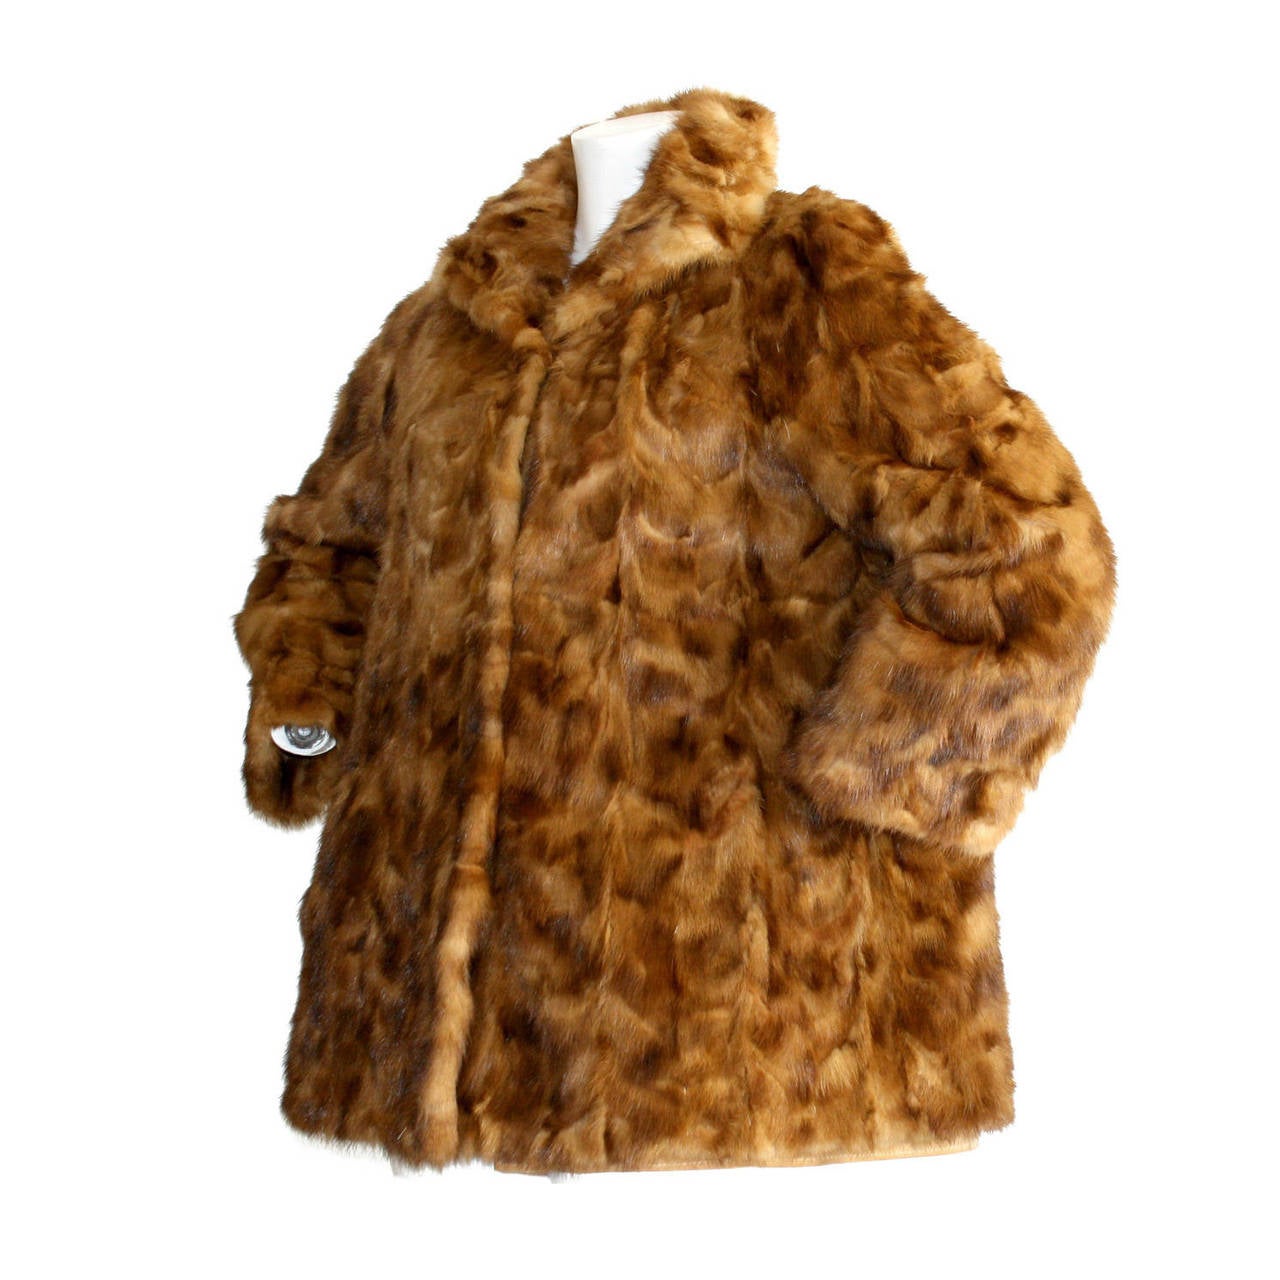 fendi fur coat price